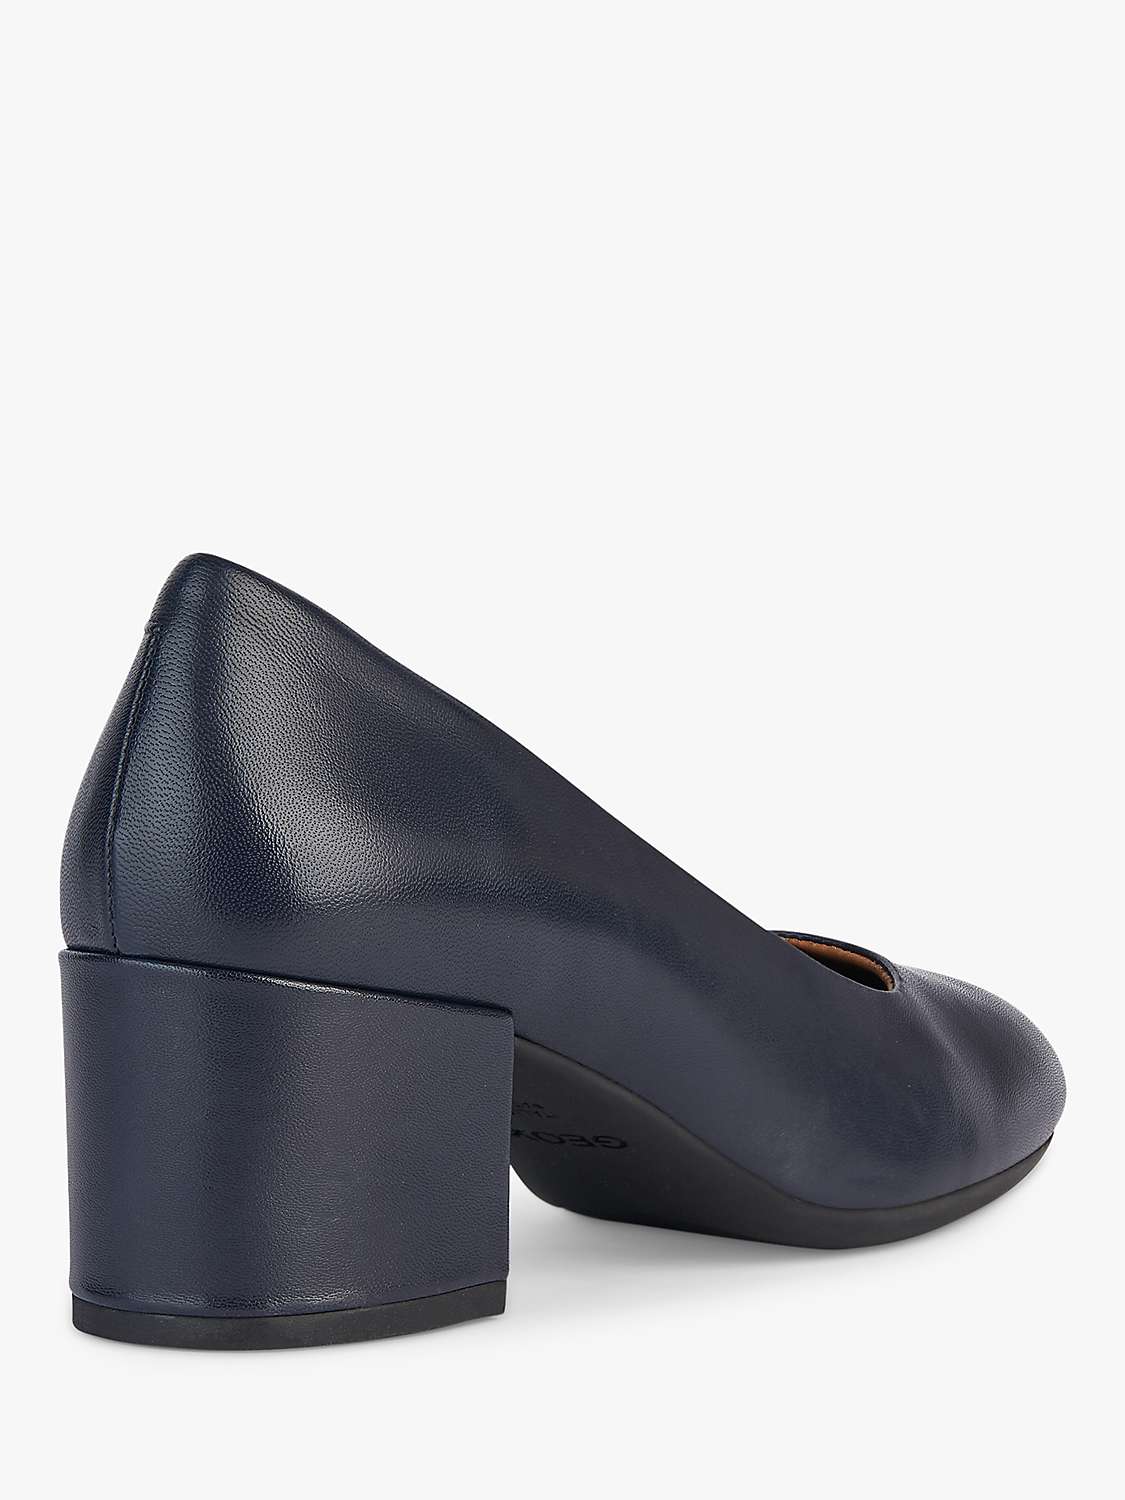 Buy Geox Eleana Block Heel Court Shoes, Navy Online at johnlewis.com